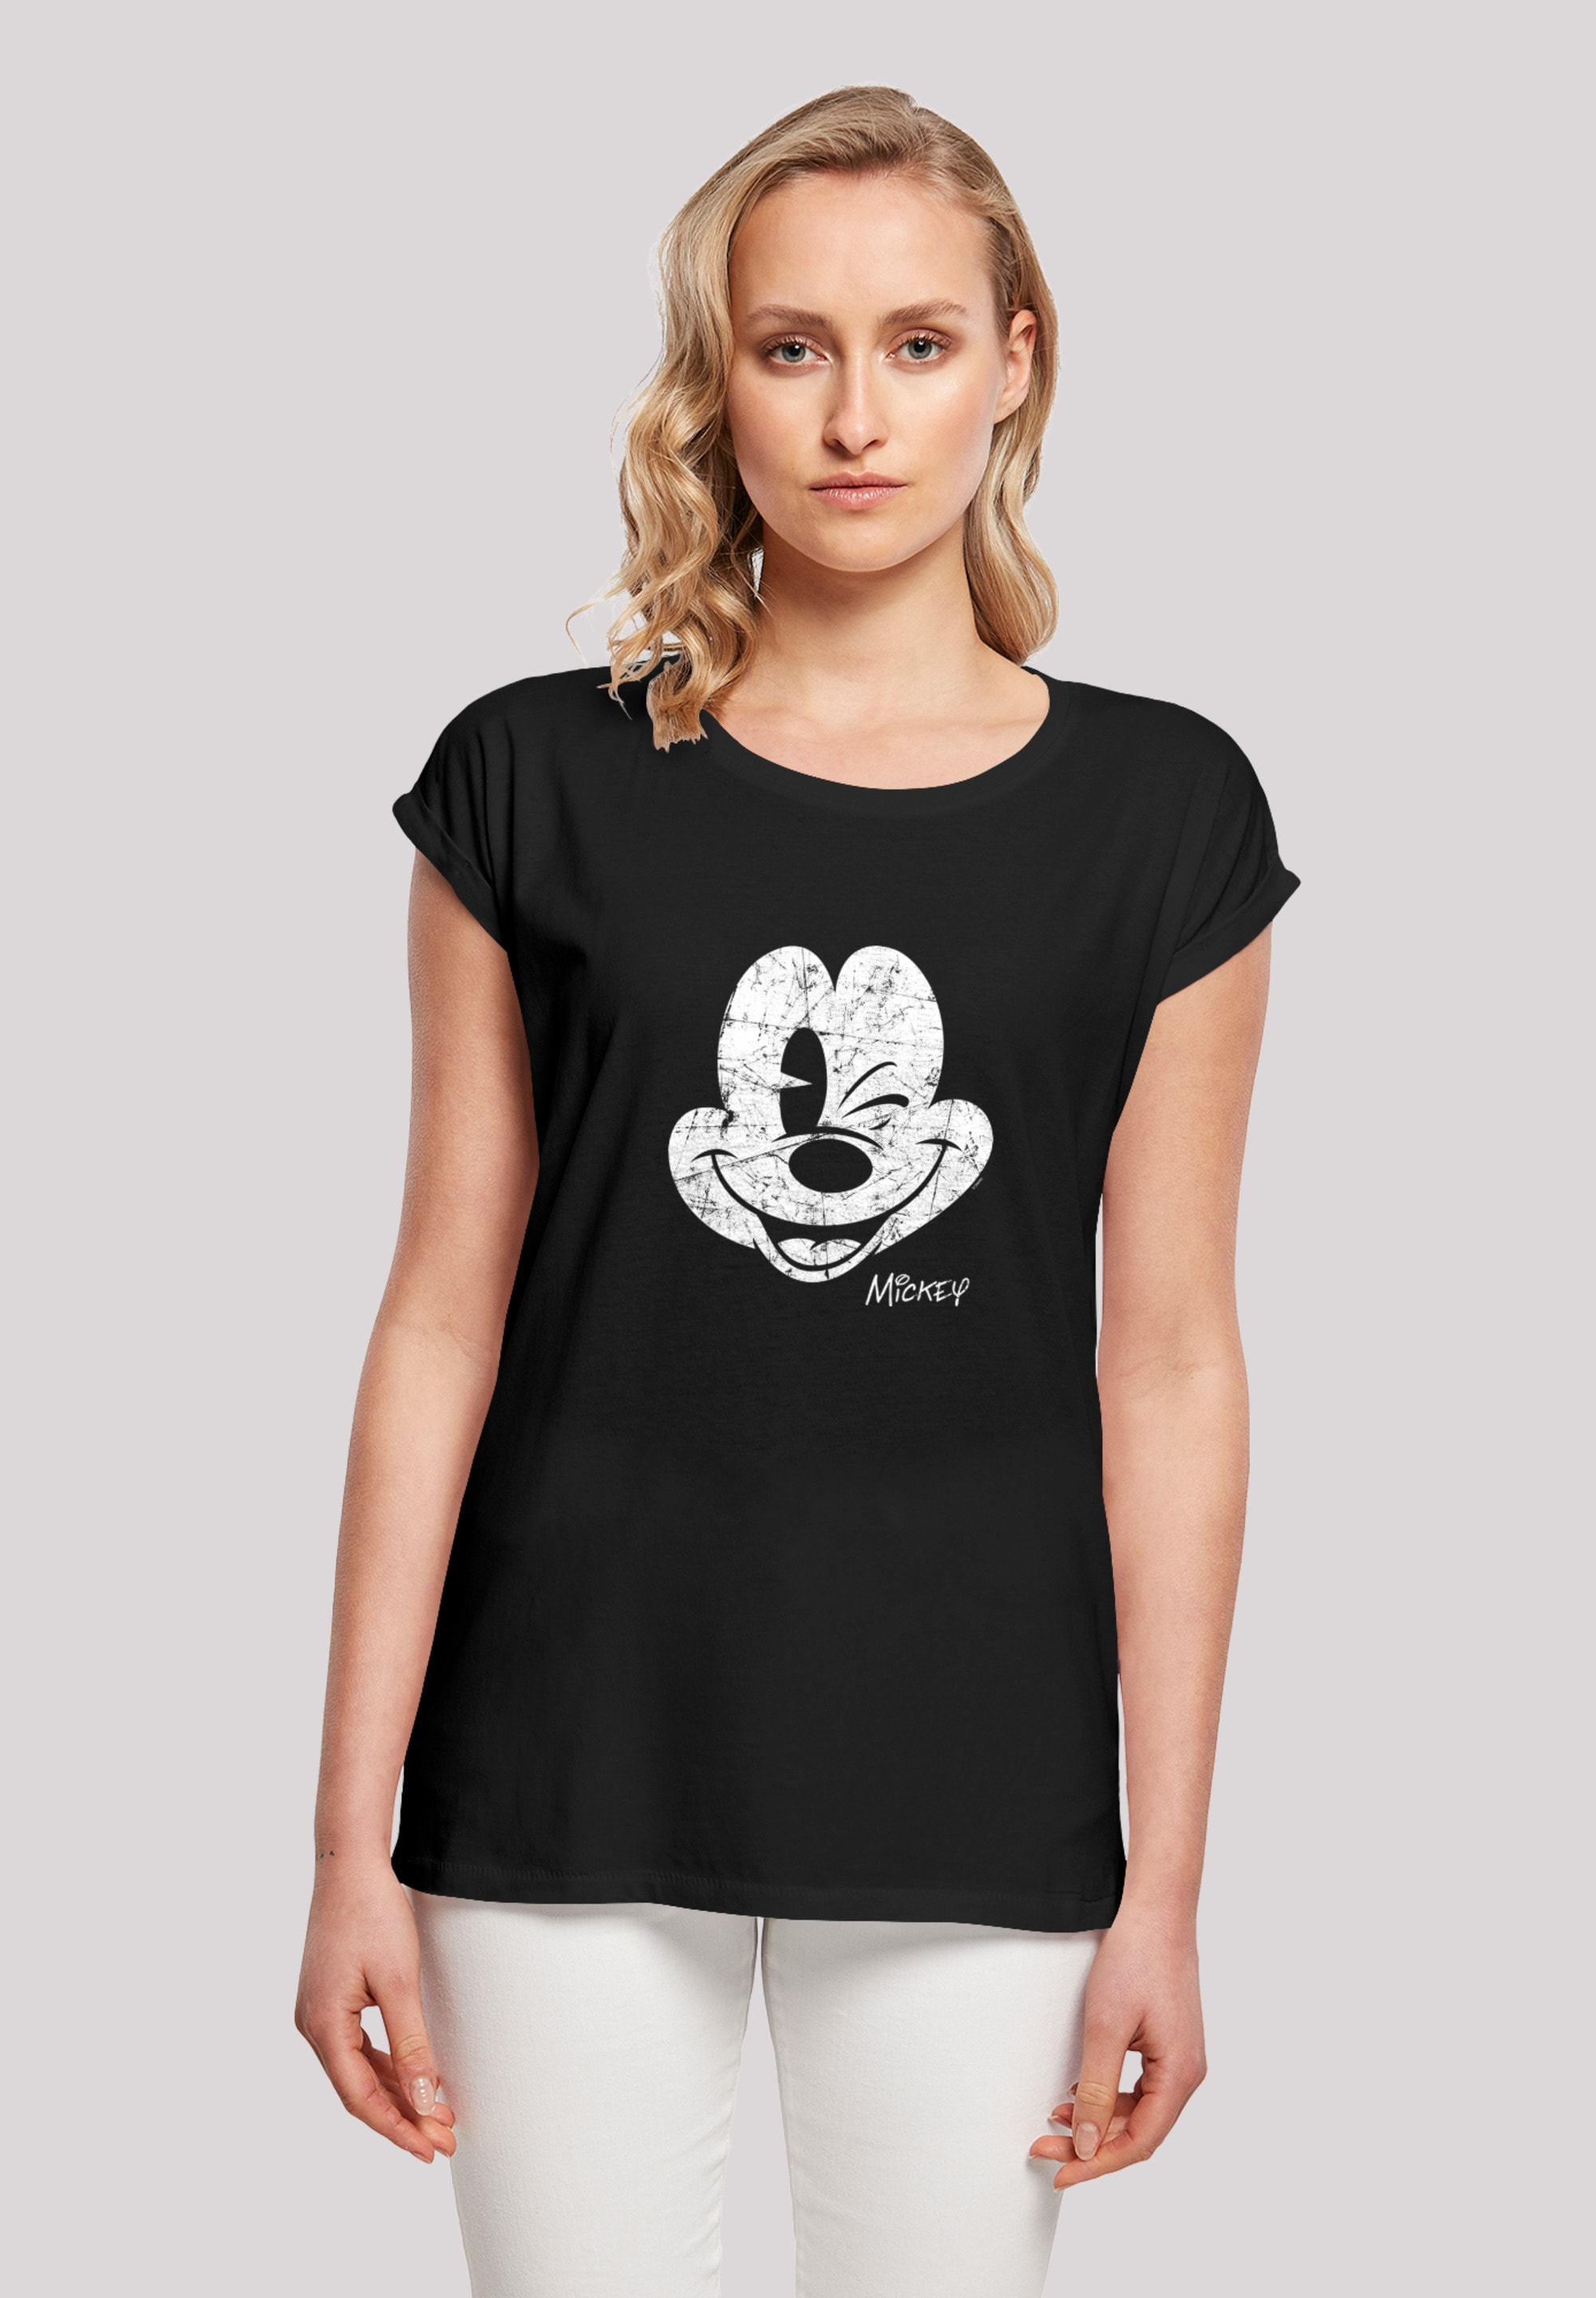 Gesicht«, »Disney Damen,Premium F4NT4STIC T-Shirt Micky Ärmel,Bedruckt Maus Merch,Regular-Fit,Kurze shoppen